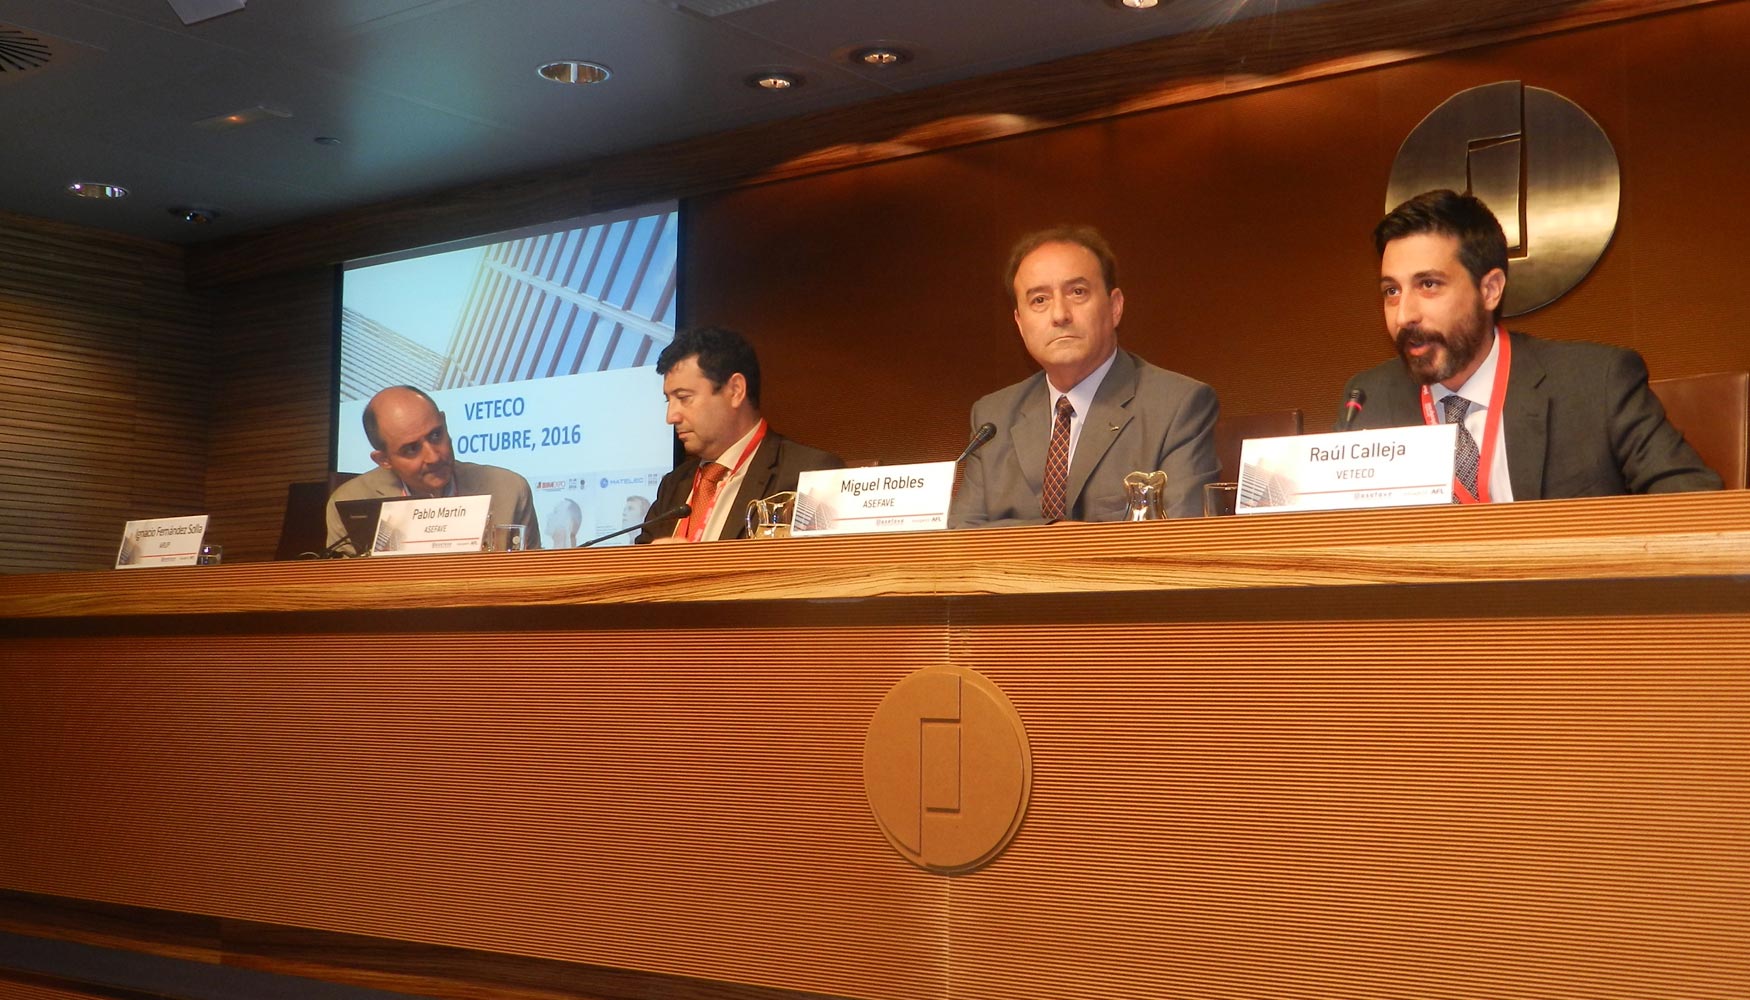 De izda. a dcha.: Ignacio Fernndez Solla, Pablo Martn, Miguel Robles y Alberto Leal, durante la inauguracin del evento...